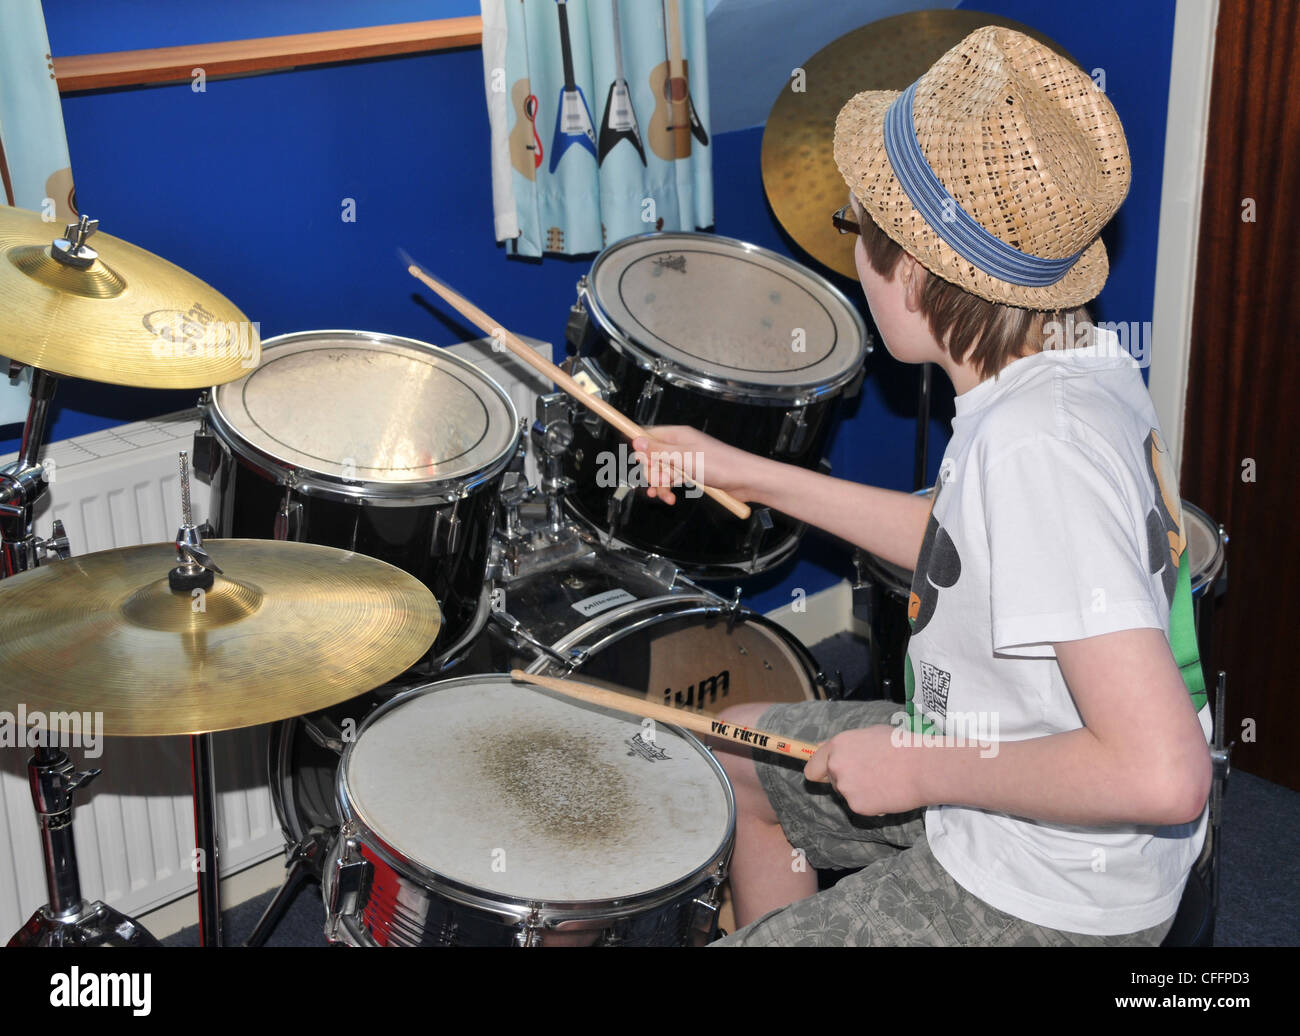 Ein kleiner Junge Schlagzeug - Schlagzeug zu spielen. Stockfoto